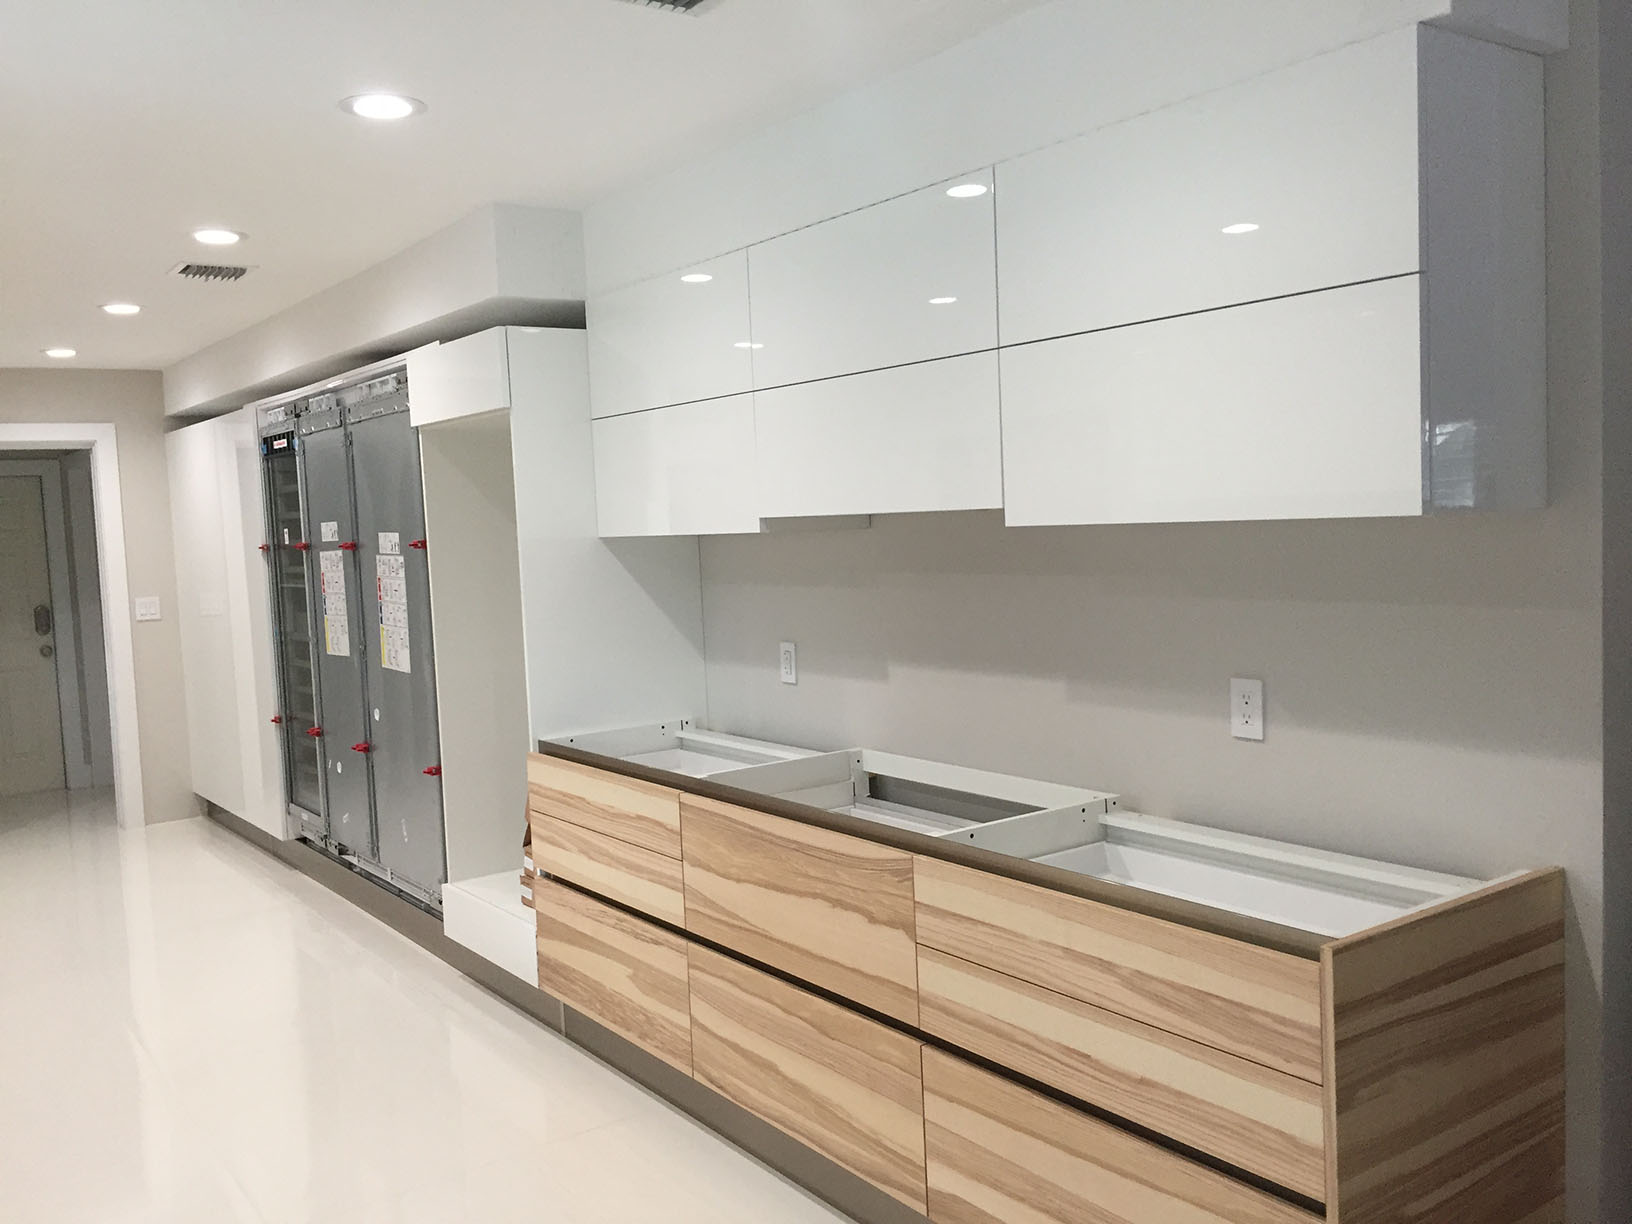 Installed kitchen cabinets